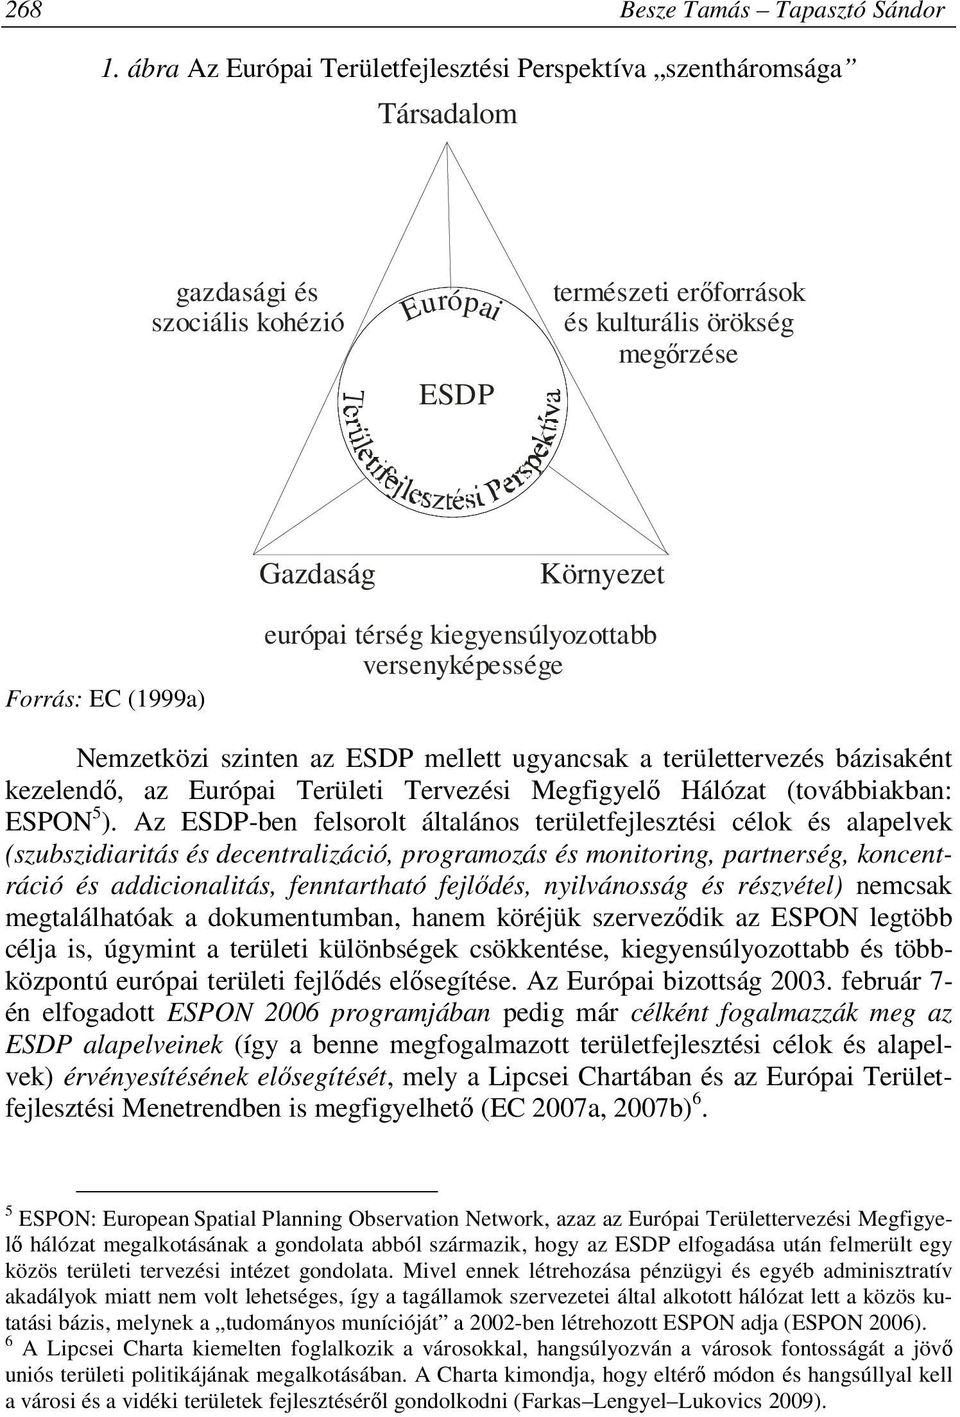 EC (1999a) európai térség kiegyensúlyozottabb versenyképessége Nemzetközi szinten az ESDP mellett ugyancsak a területtervezés bázisaként kezelendő, az Európai Területi Tervezési Megfigyelő Hálózat